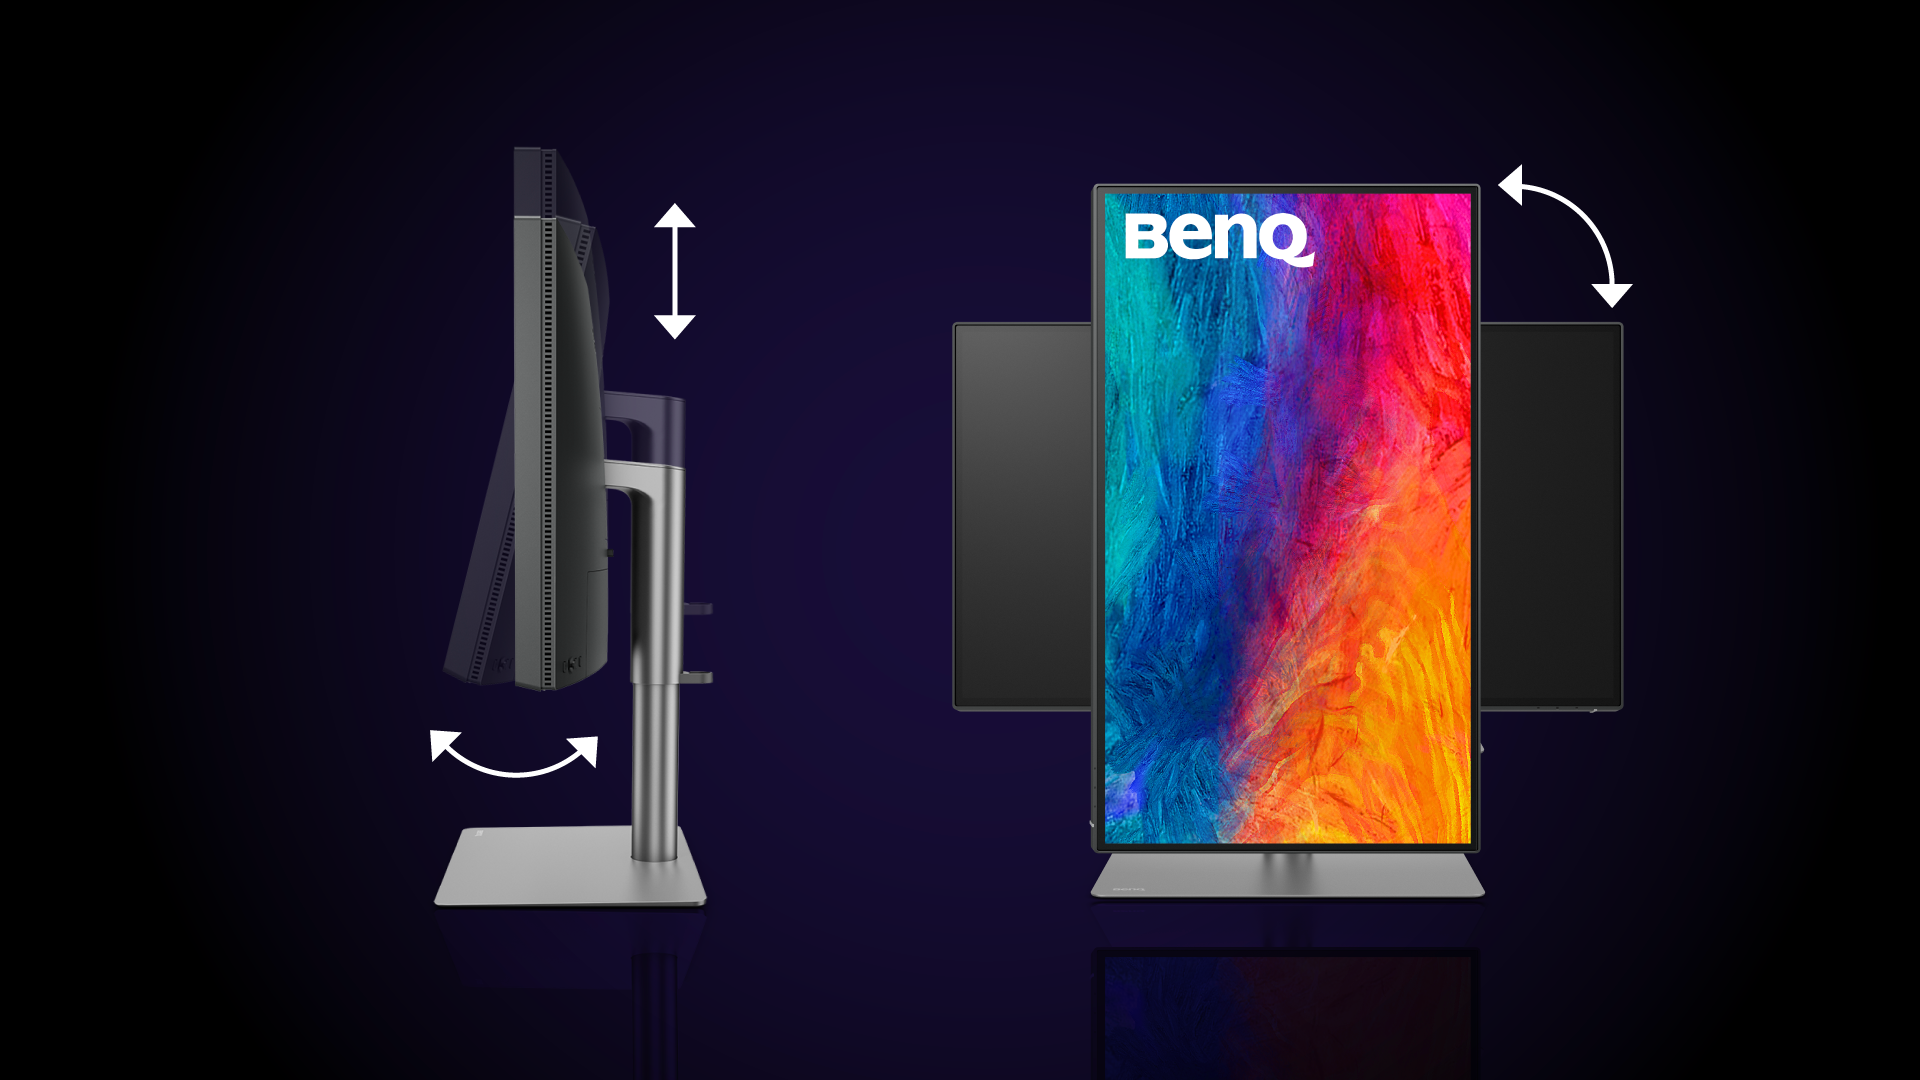 A Mac felhasználók számára készült BenQ monitorok egy fejlett állvánnyal rendelkeznek, amely lehetővé teszi a monitor elhelyezésének gondos testreszabását, miközben az állvány nagyszerűen néz ki, és zökkenőmentesen illeszkedik a Mac környezetbe. Találja meg az ideális monitor megtekintési élményt a dönthető, forgatható, pivot és magasságában állítható monitorral. Függetlenül attól, hogy min dolgozik, a monitor megfelelő szöge és elhelyezése növeli a kényelmet, a termelékenységet, és csökkenti az olyan kellemetlen érzések valószínűségét, mint a szem megerőltetése vagy a nyakfájás.